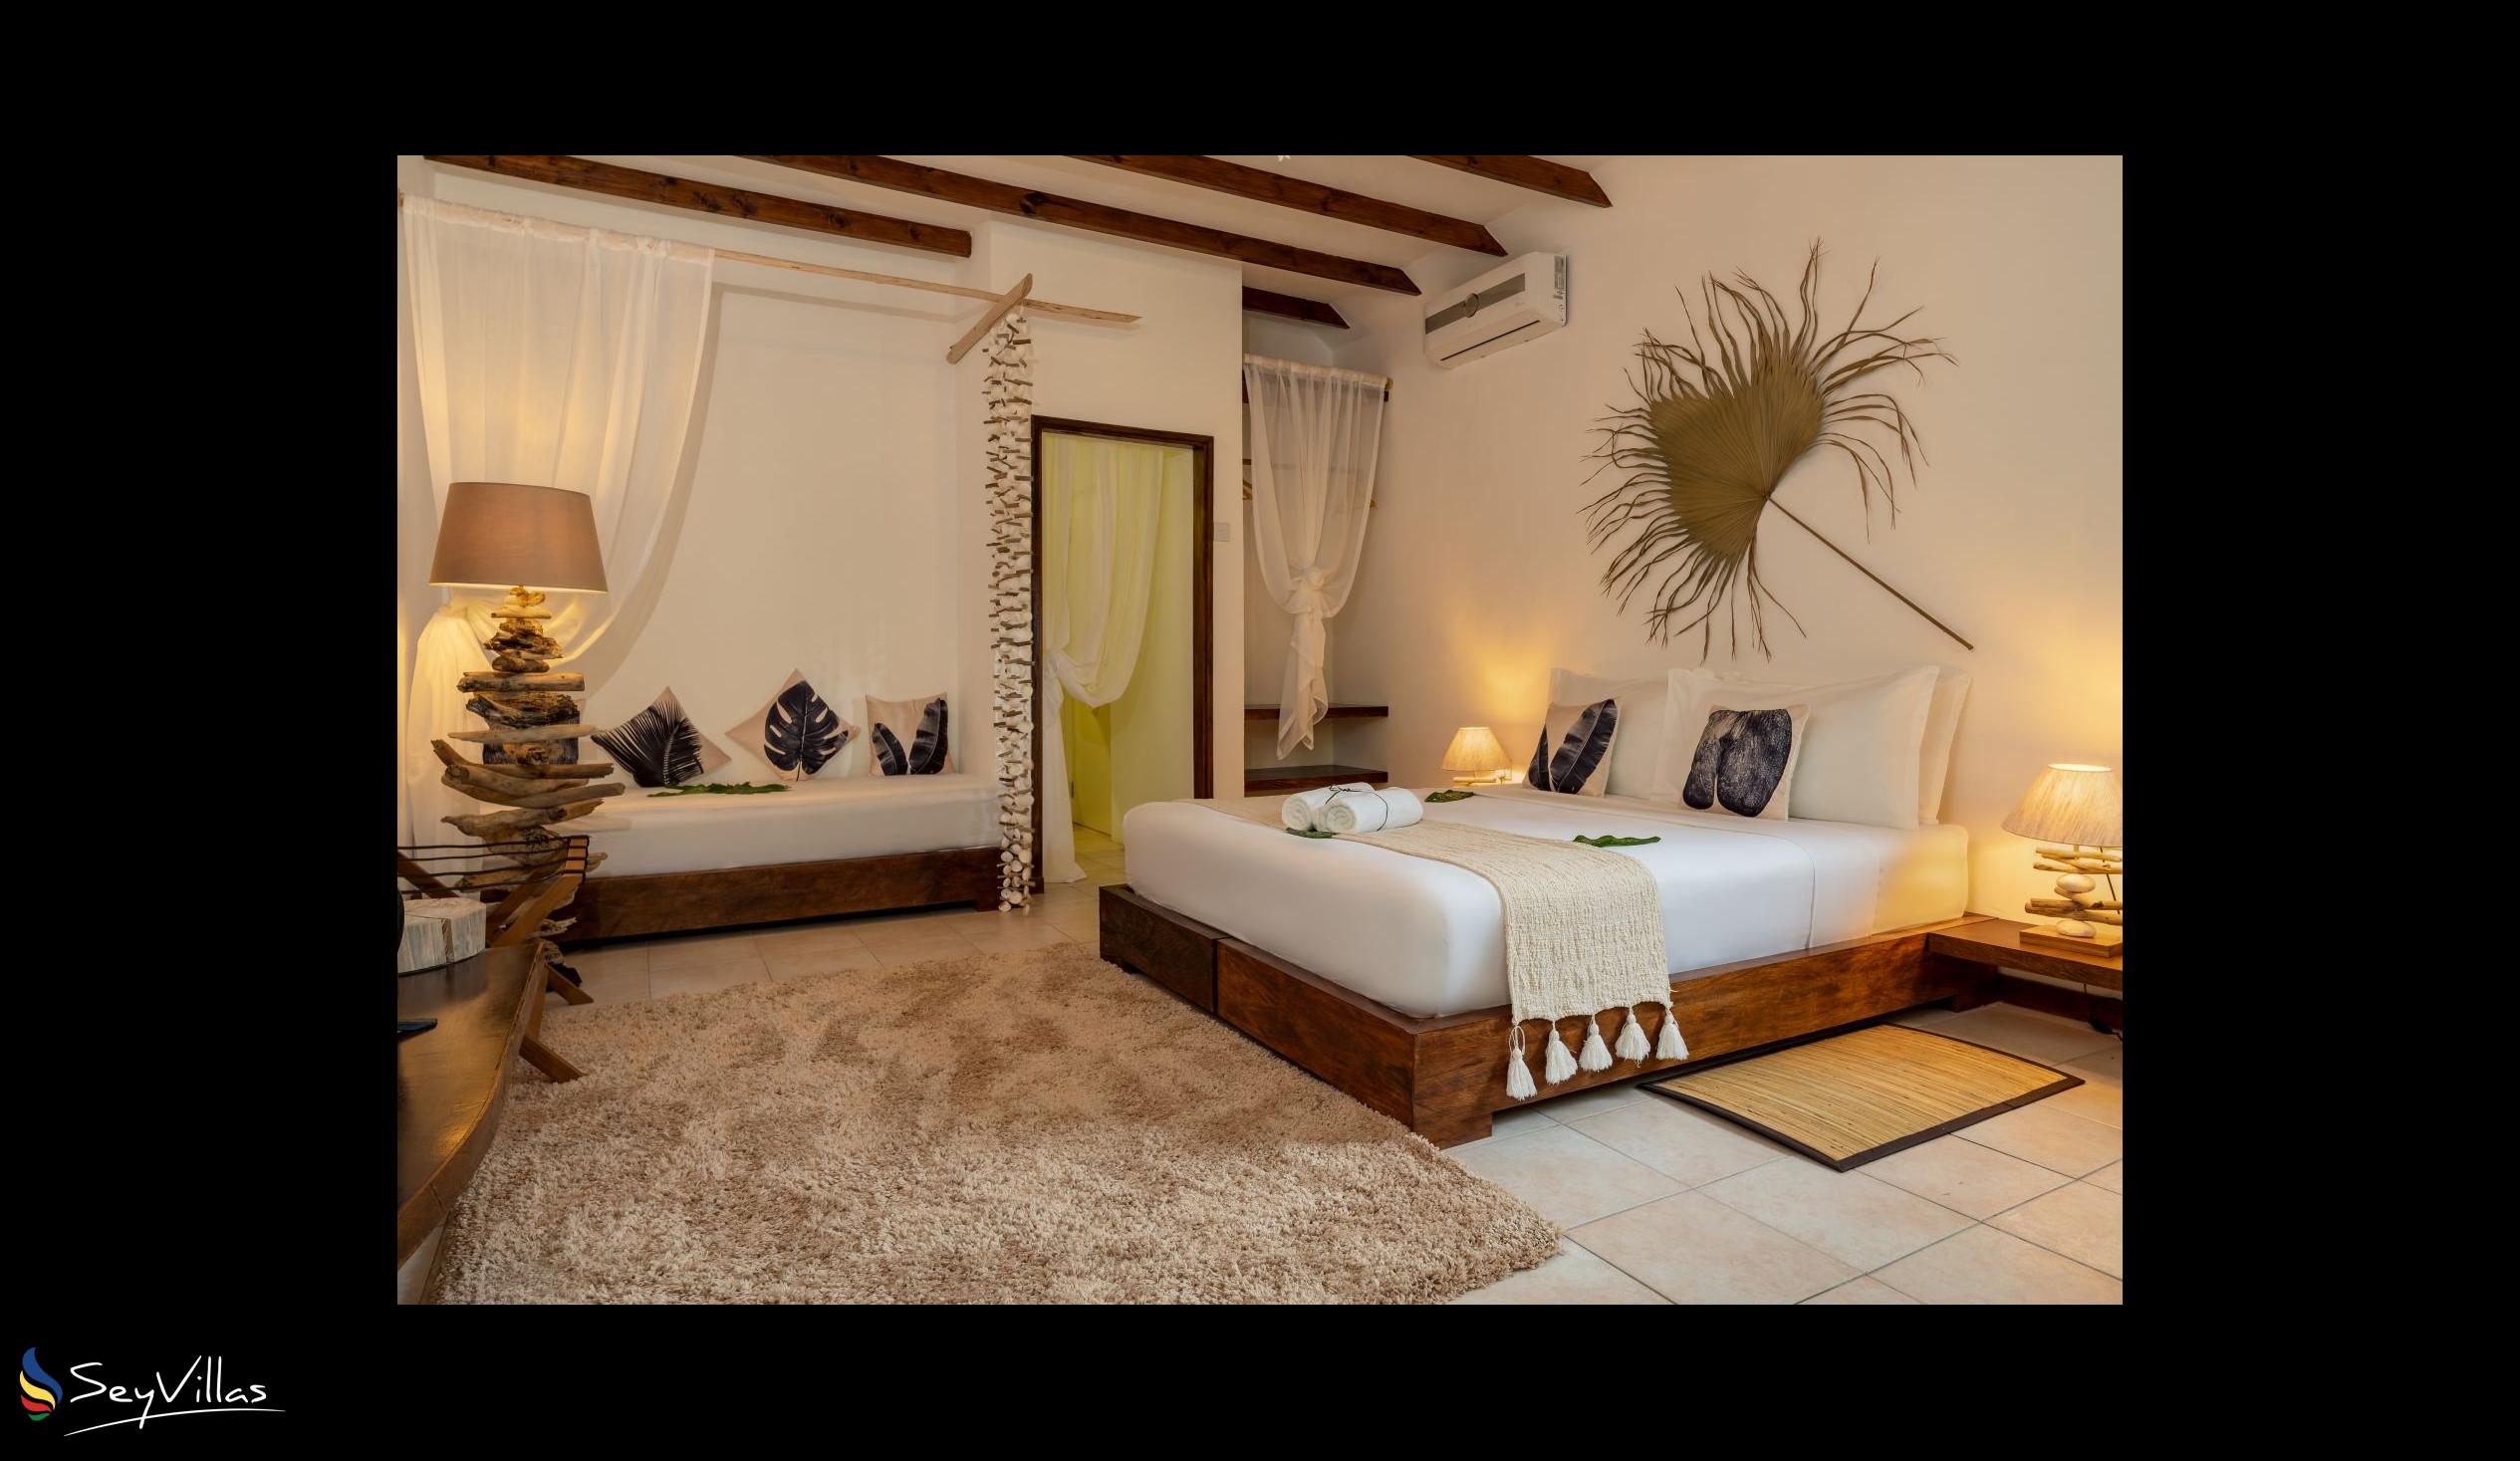 Foto 46: Bliss Hotel Praslin - Eden Garden - Camera Superior - Praslin (Seychelles)